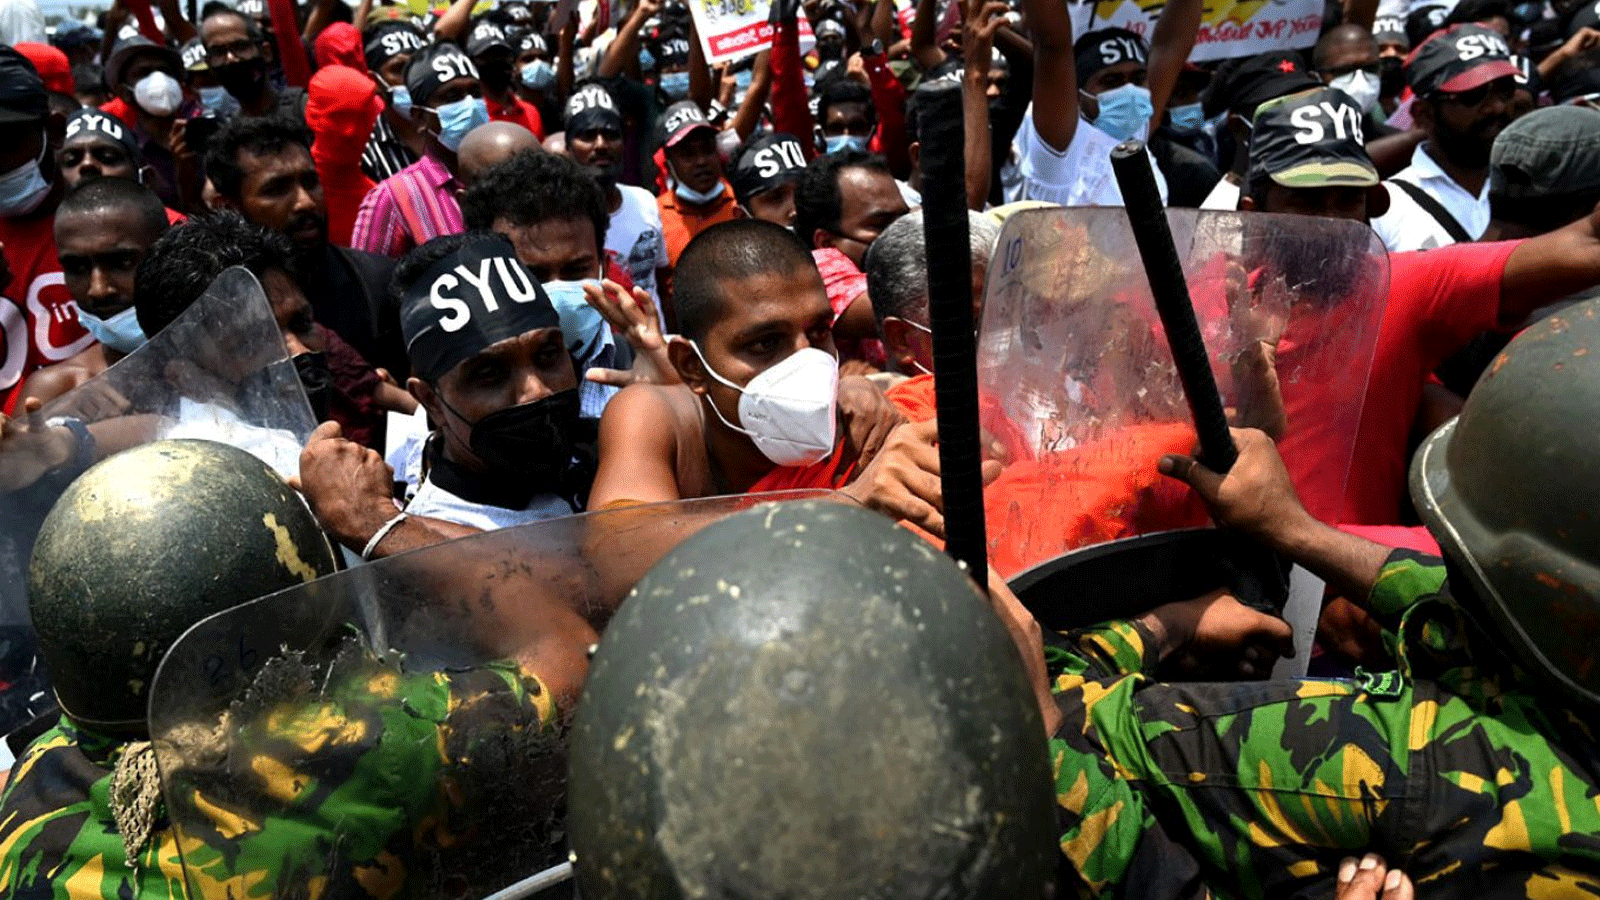  ضباط قوة المهام الخاصة التابعة للشرطة يحاولون إيقاف المتظاهرين خلال احتجاج على ارتفاع تكاليف المعيشة، خارج مكتب الرئيس جوتابايا راجاباكسا على الواجهة البحرية في كولومبو في 18 آذار\مارس 2022